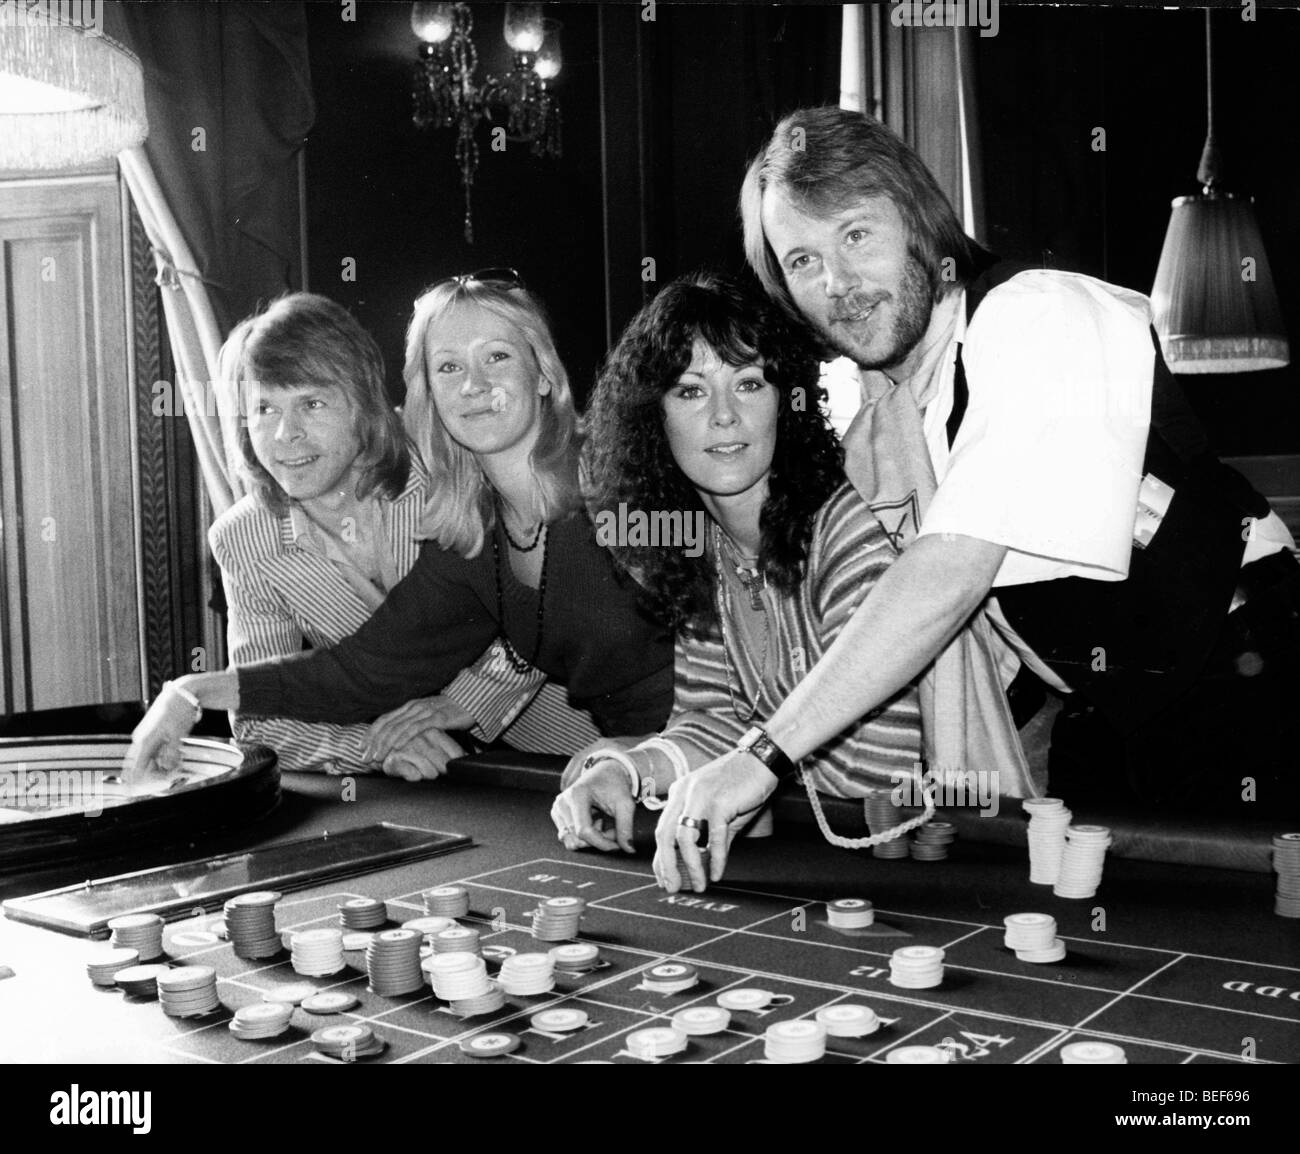 ABBA jugar ruleta a finales de los años setenta (L-R) Björn Ulvaeus, Agnetha Fältskog y Anni-Frid Lyngstad (Frida), y Benny Andersson Foto de stock